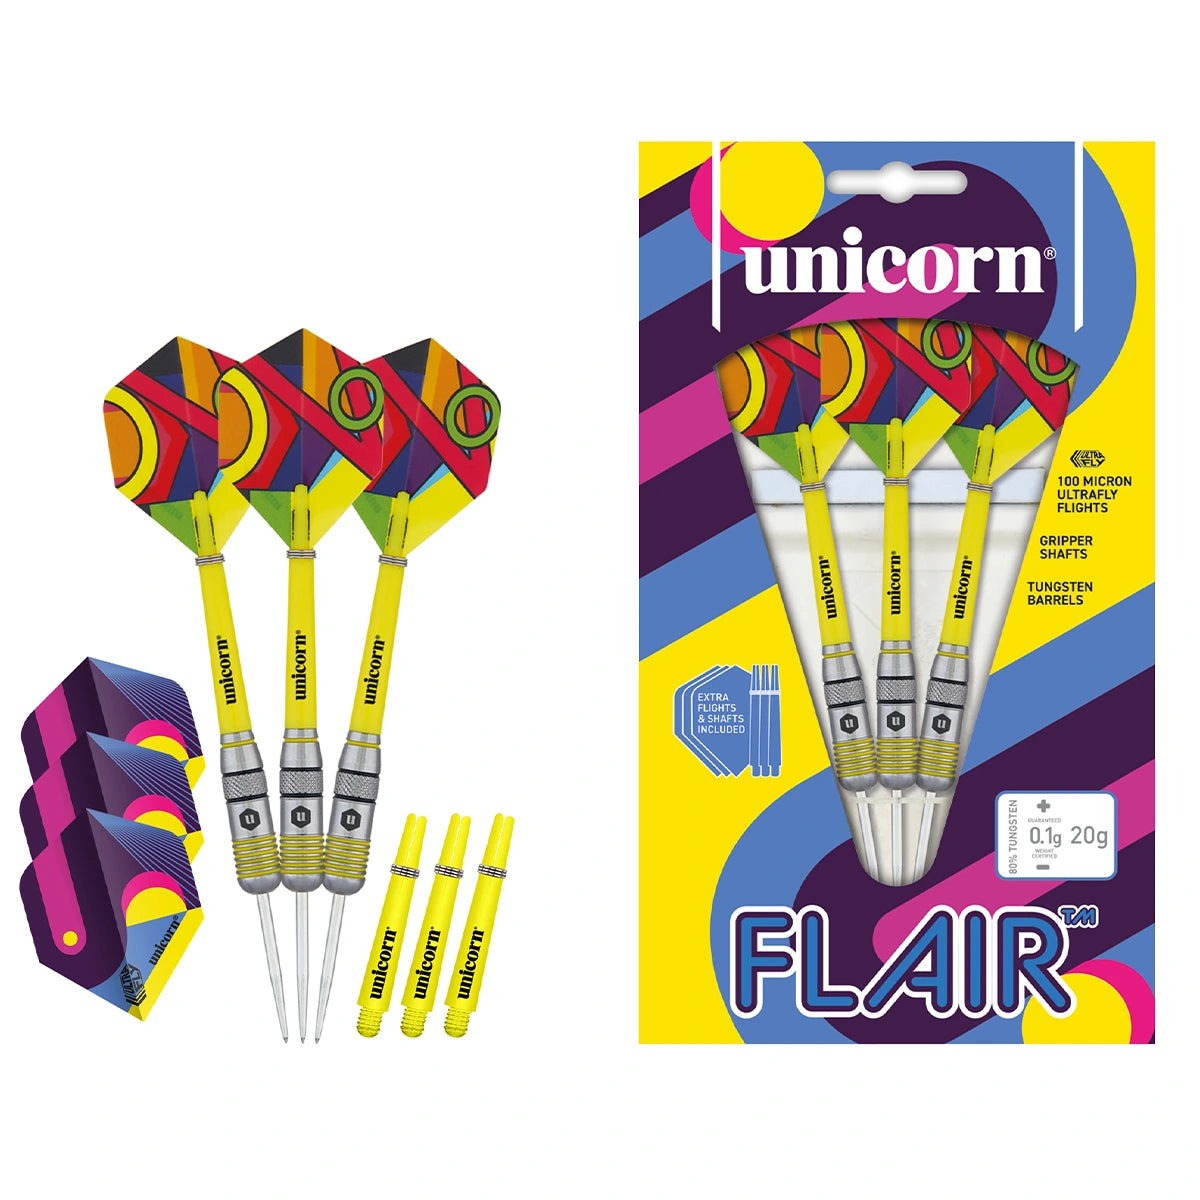 Unicorn Flair 80% Tungsten 20g Darts